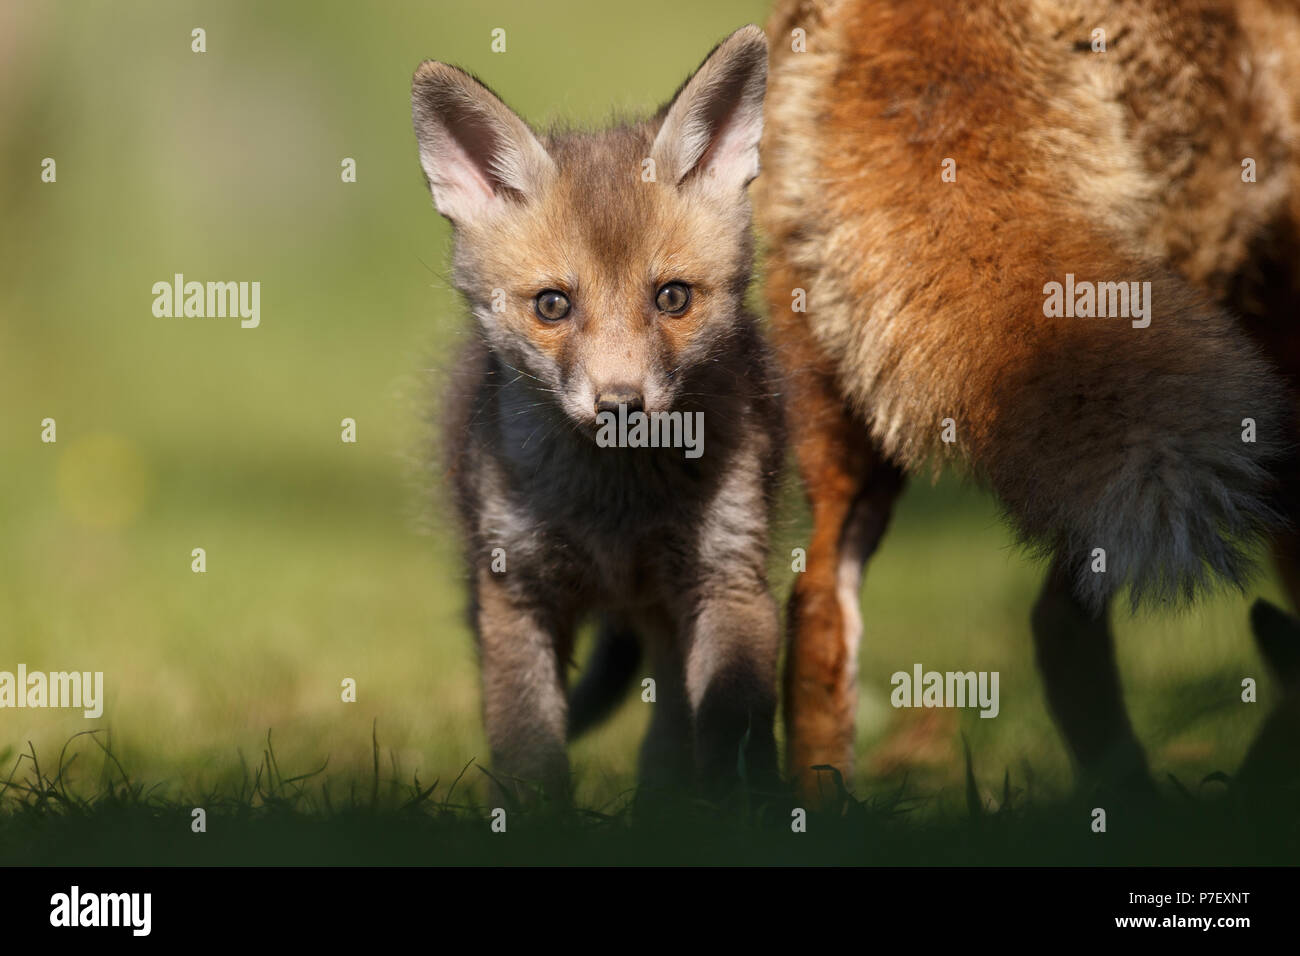 Red Fox cub à explorer son nouveau monde Banque D'Images